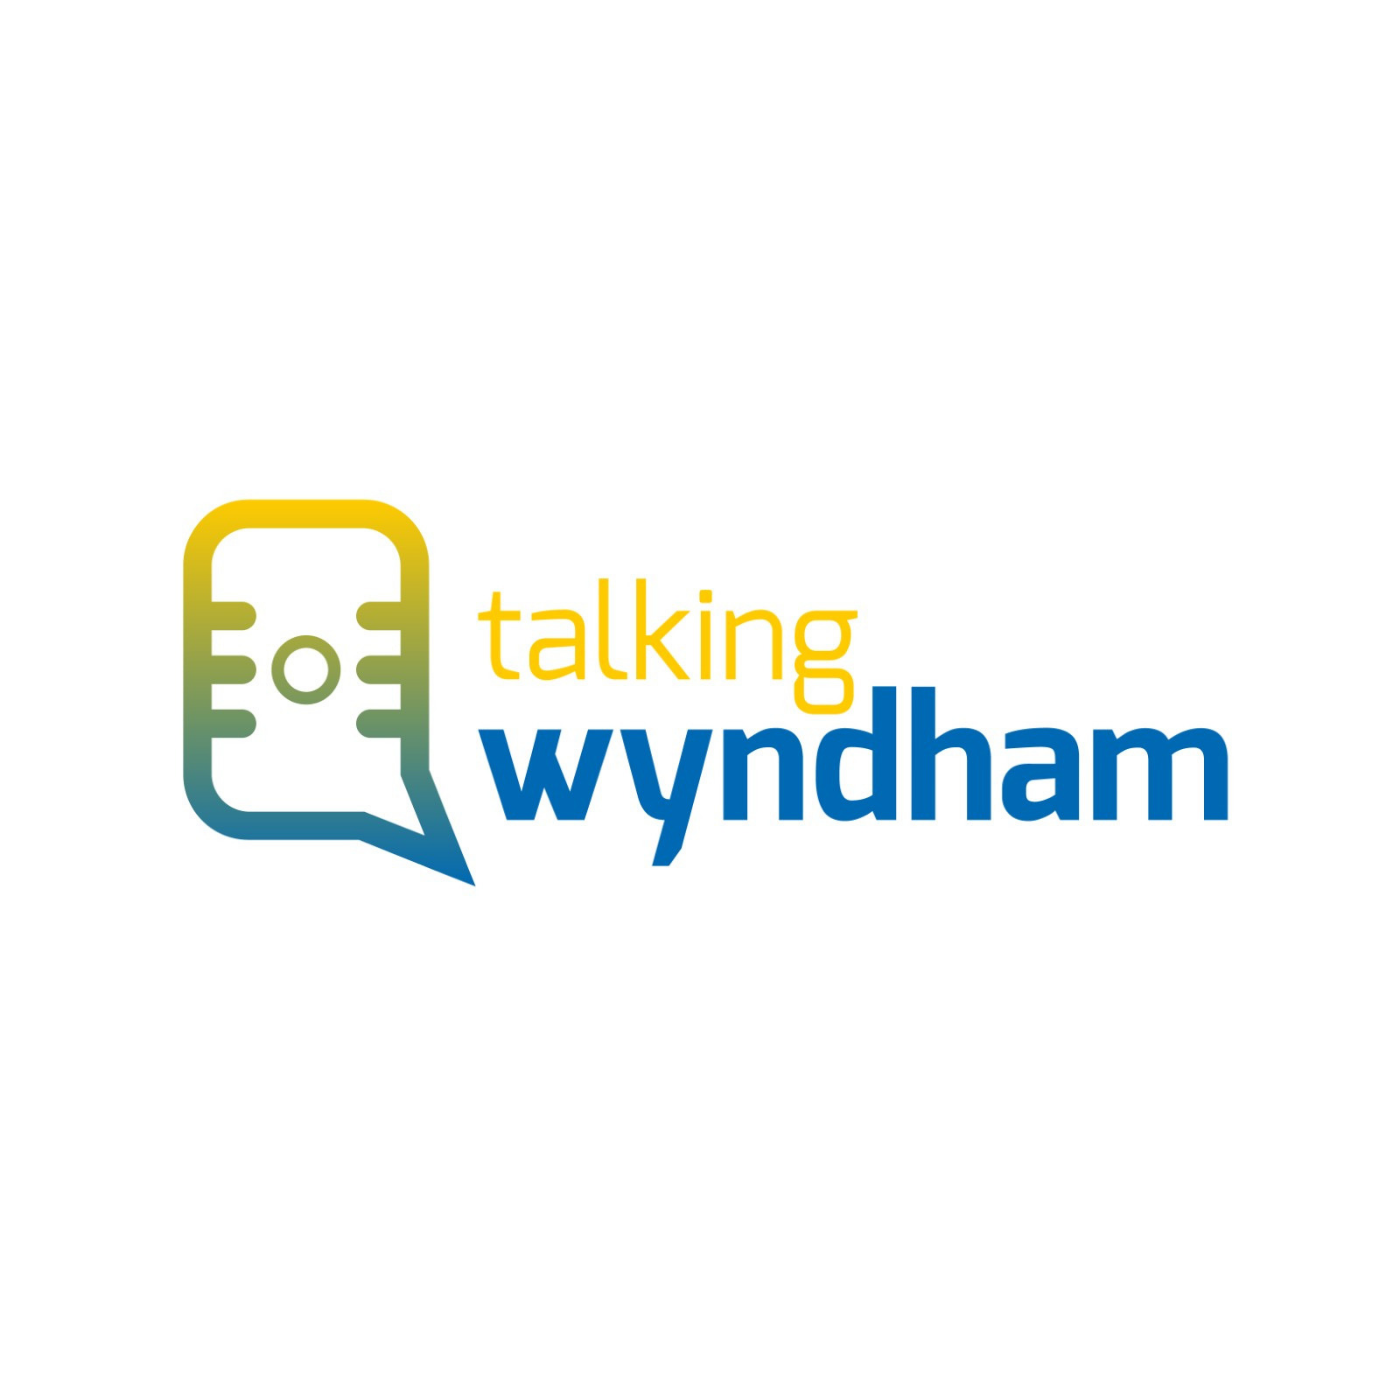 Edition 1 - Introducing Talking Wyndham